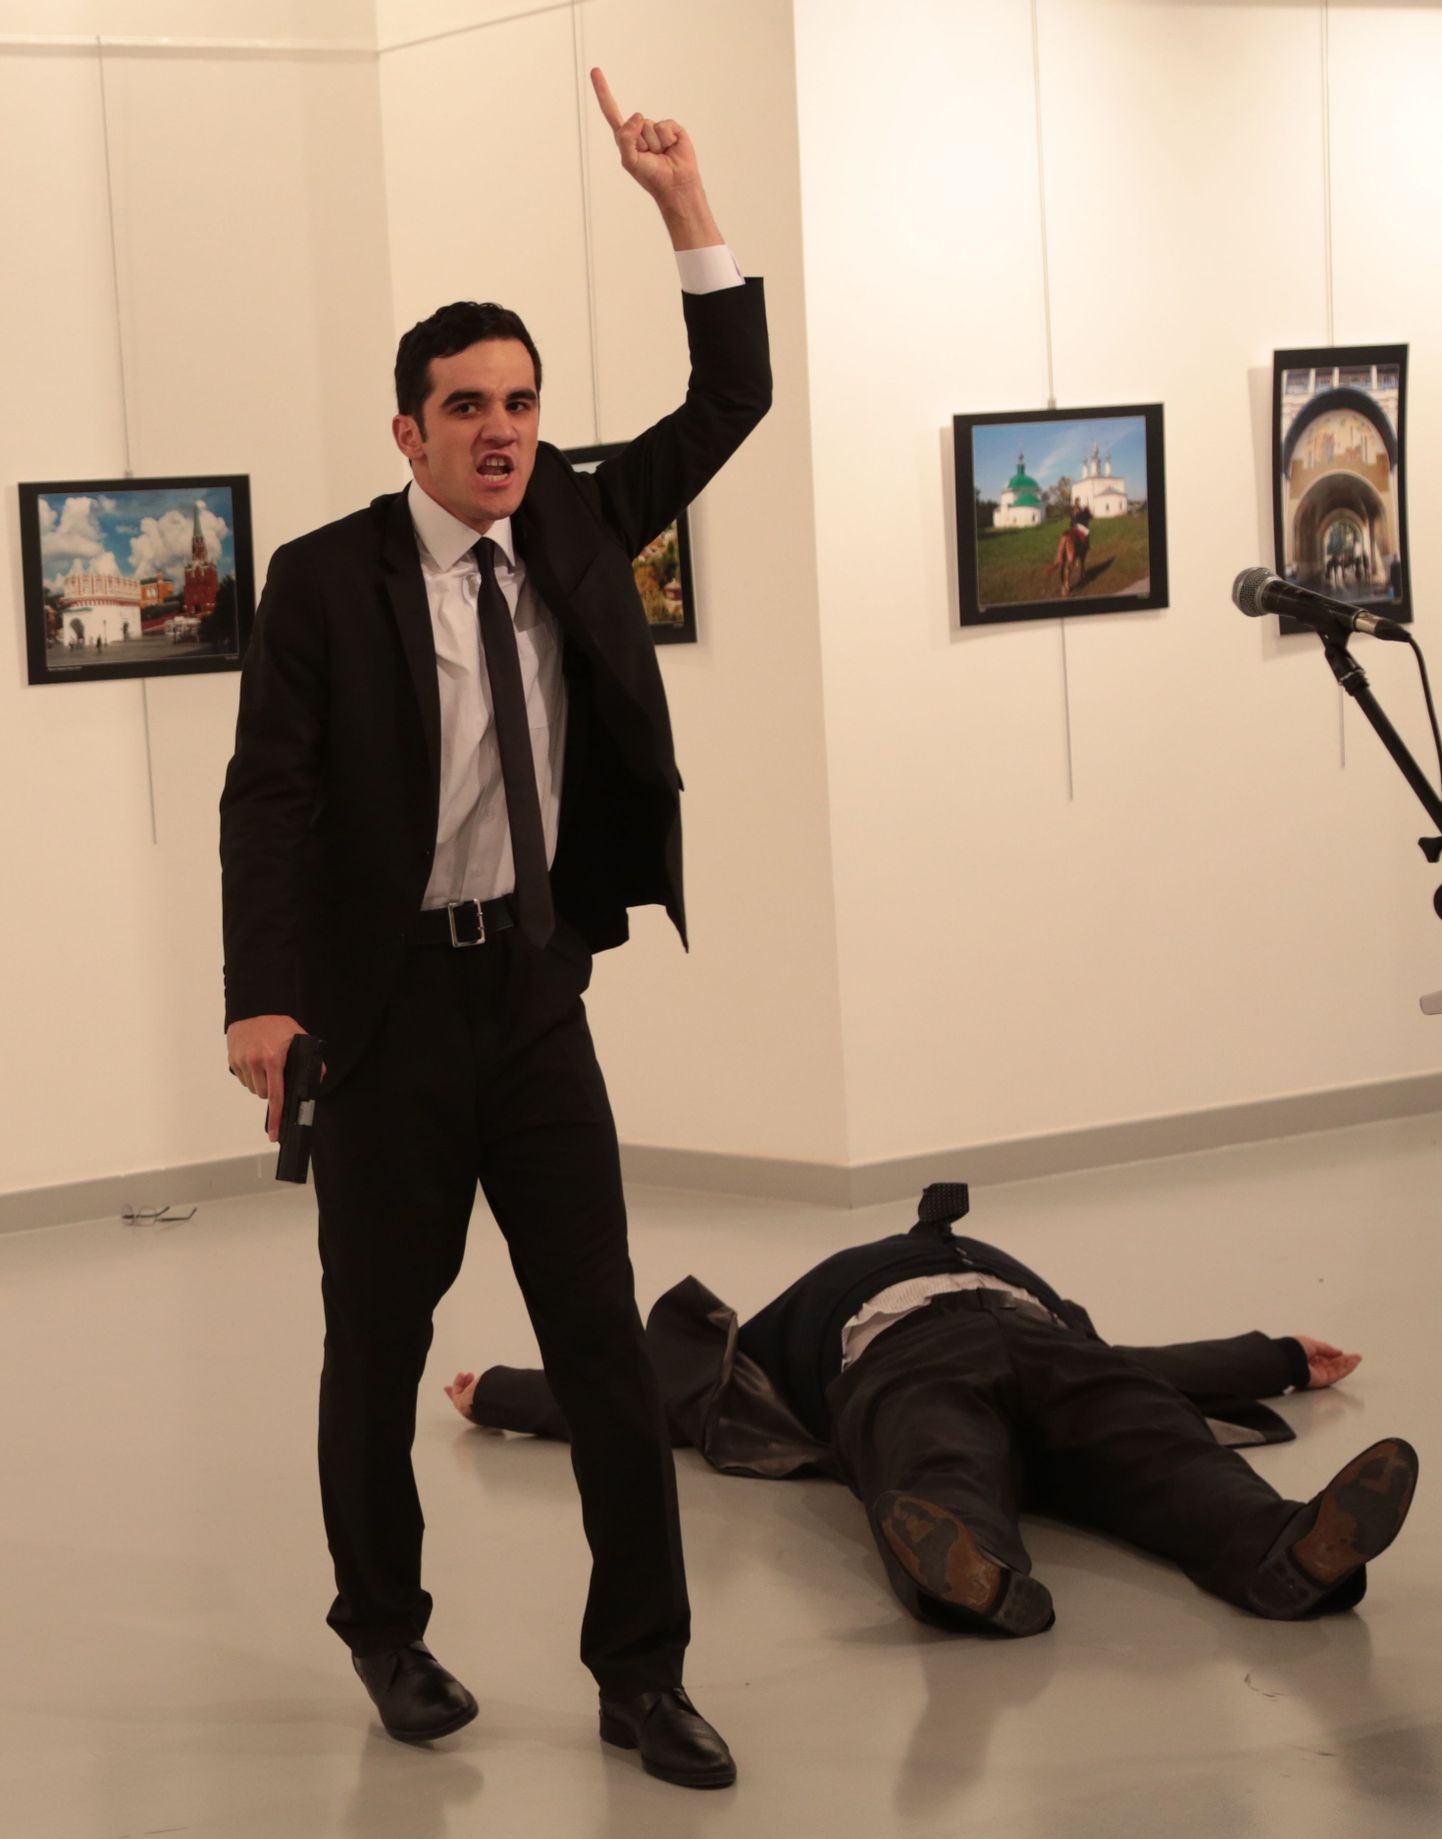 Фото с места событий: мужчина с оружием возле тела российского посла в Турции Андрея Карлова.